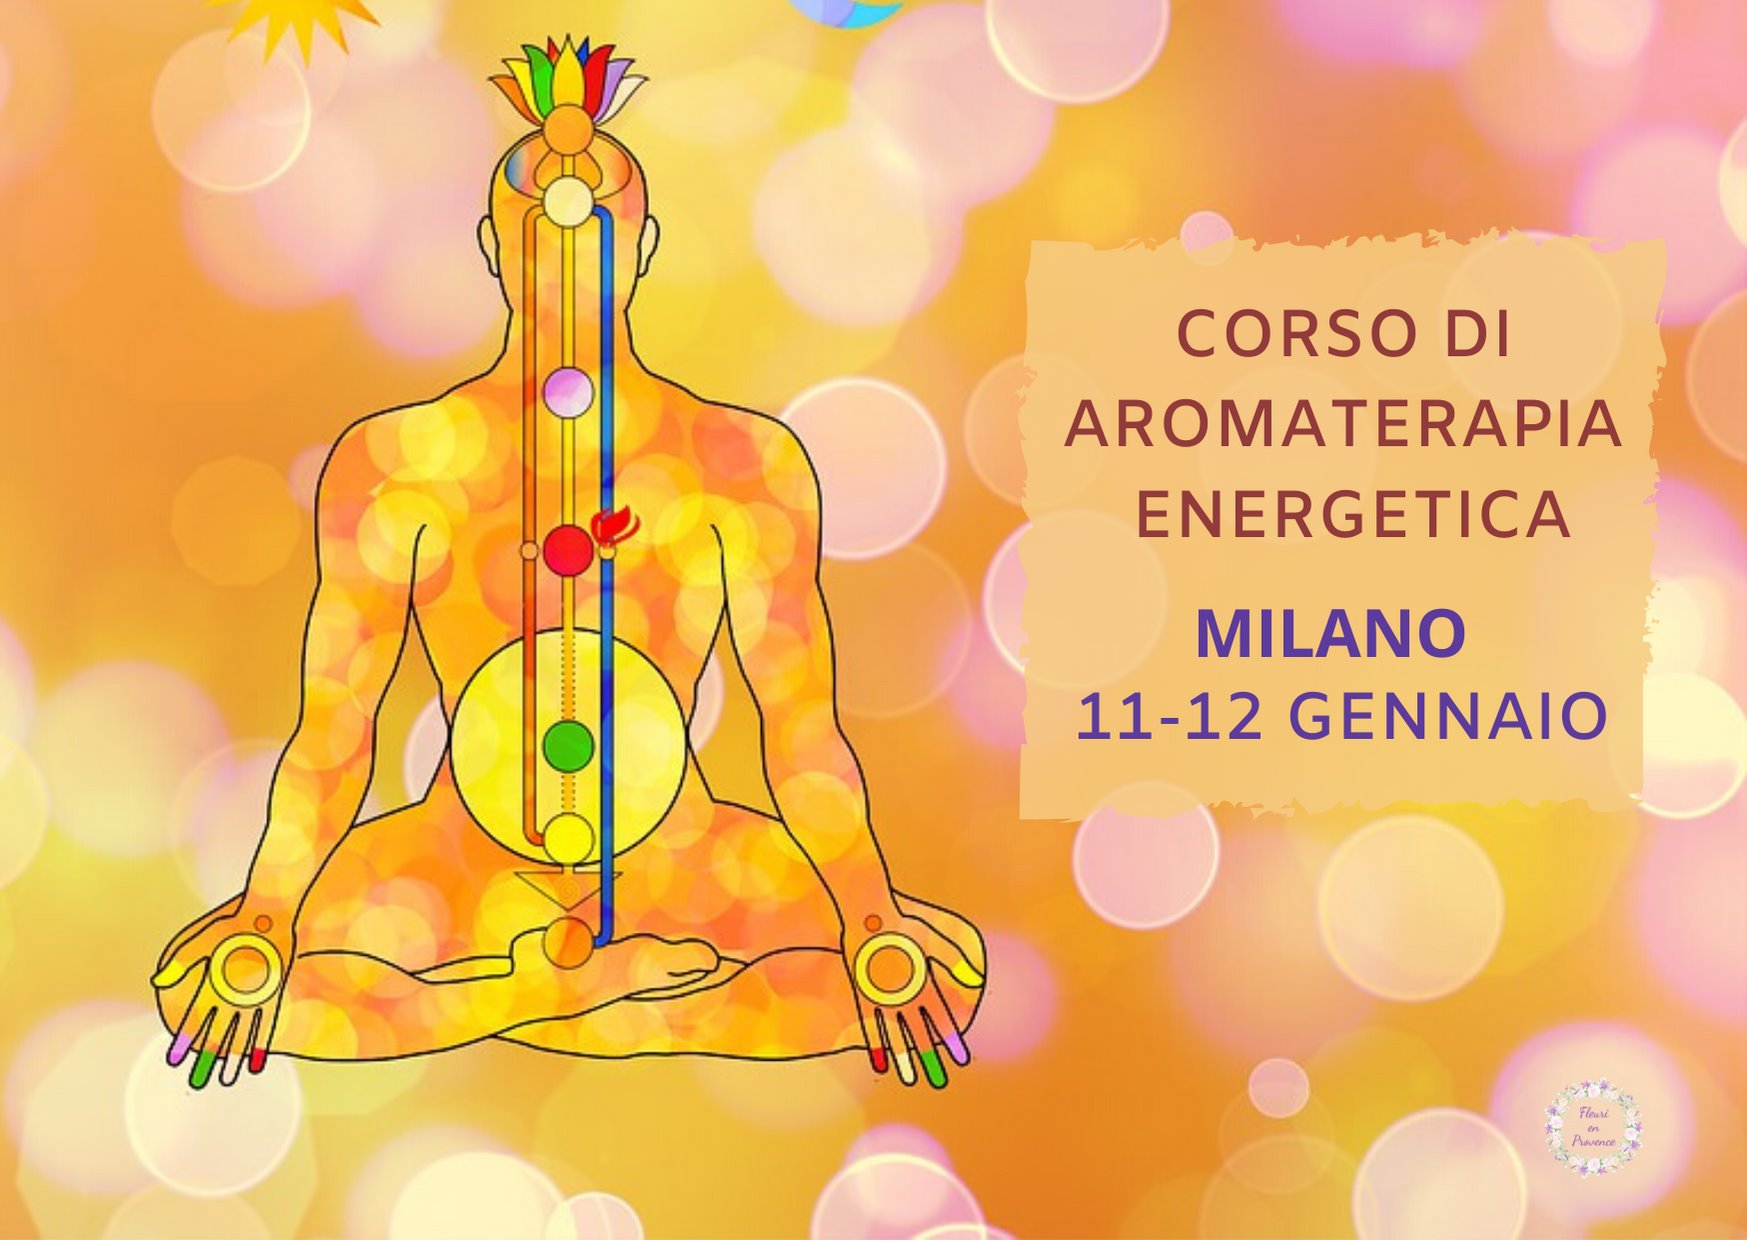 Corso di aromaterapia Milano: aromaterapia e chakra 11-12 gennaio 2020